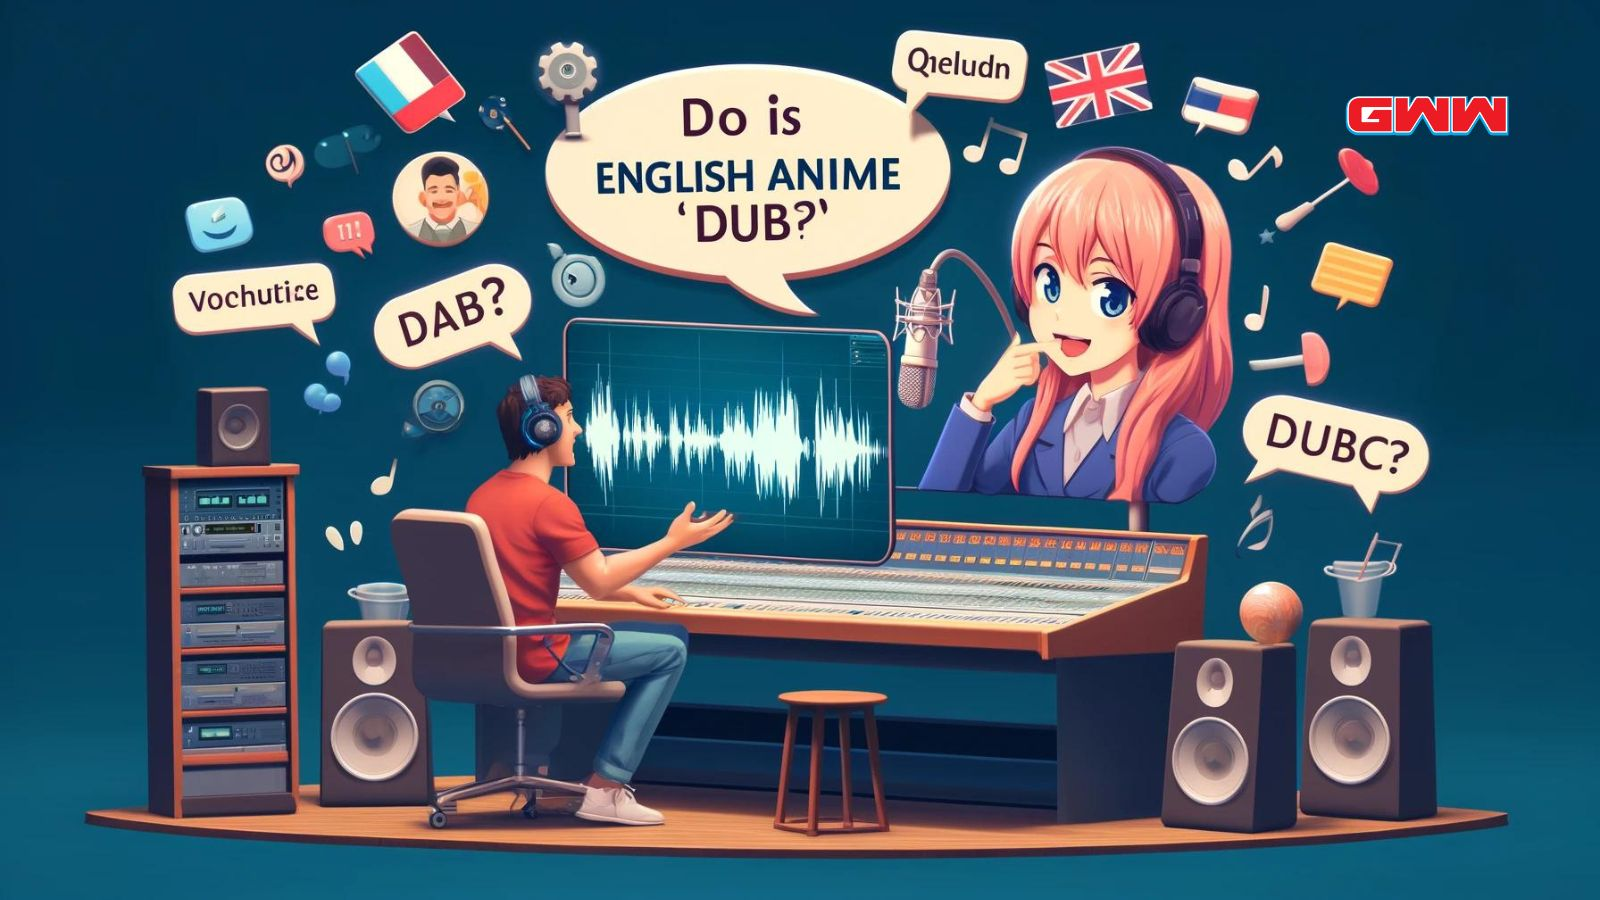 Una escena creativa que explica por qué el anime en inglés se llama 'dub.'